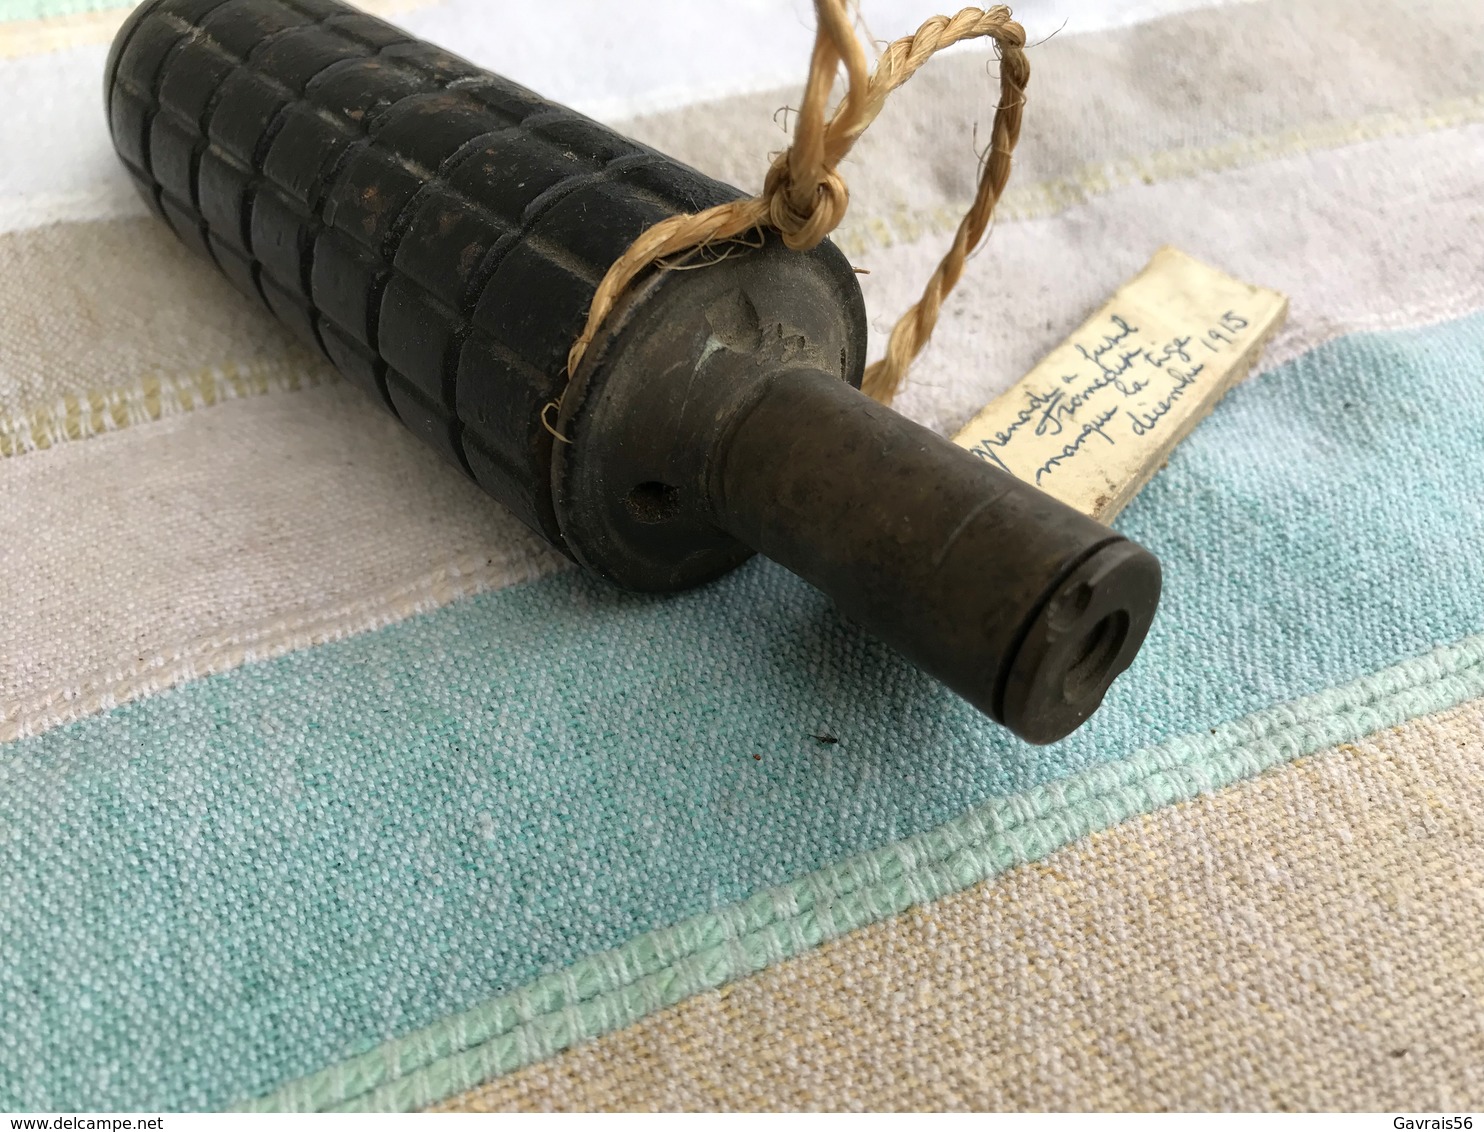 Grenade a fusil allemande manque la tige modele 1913 datée décembre 1915 hors de fonction et vide objet de collection